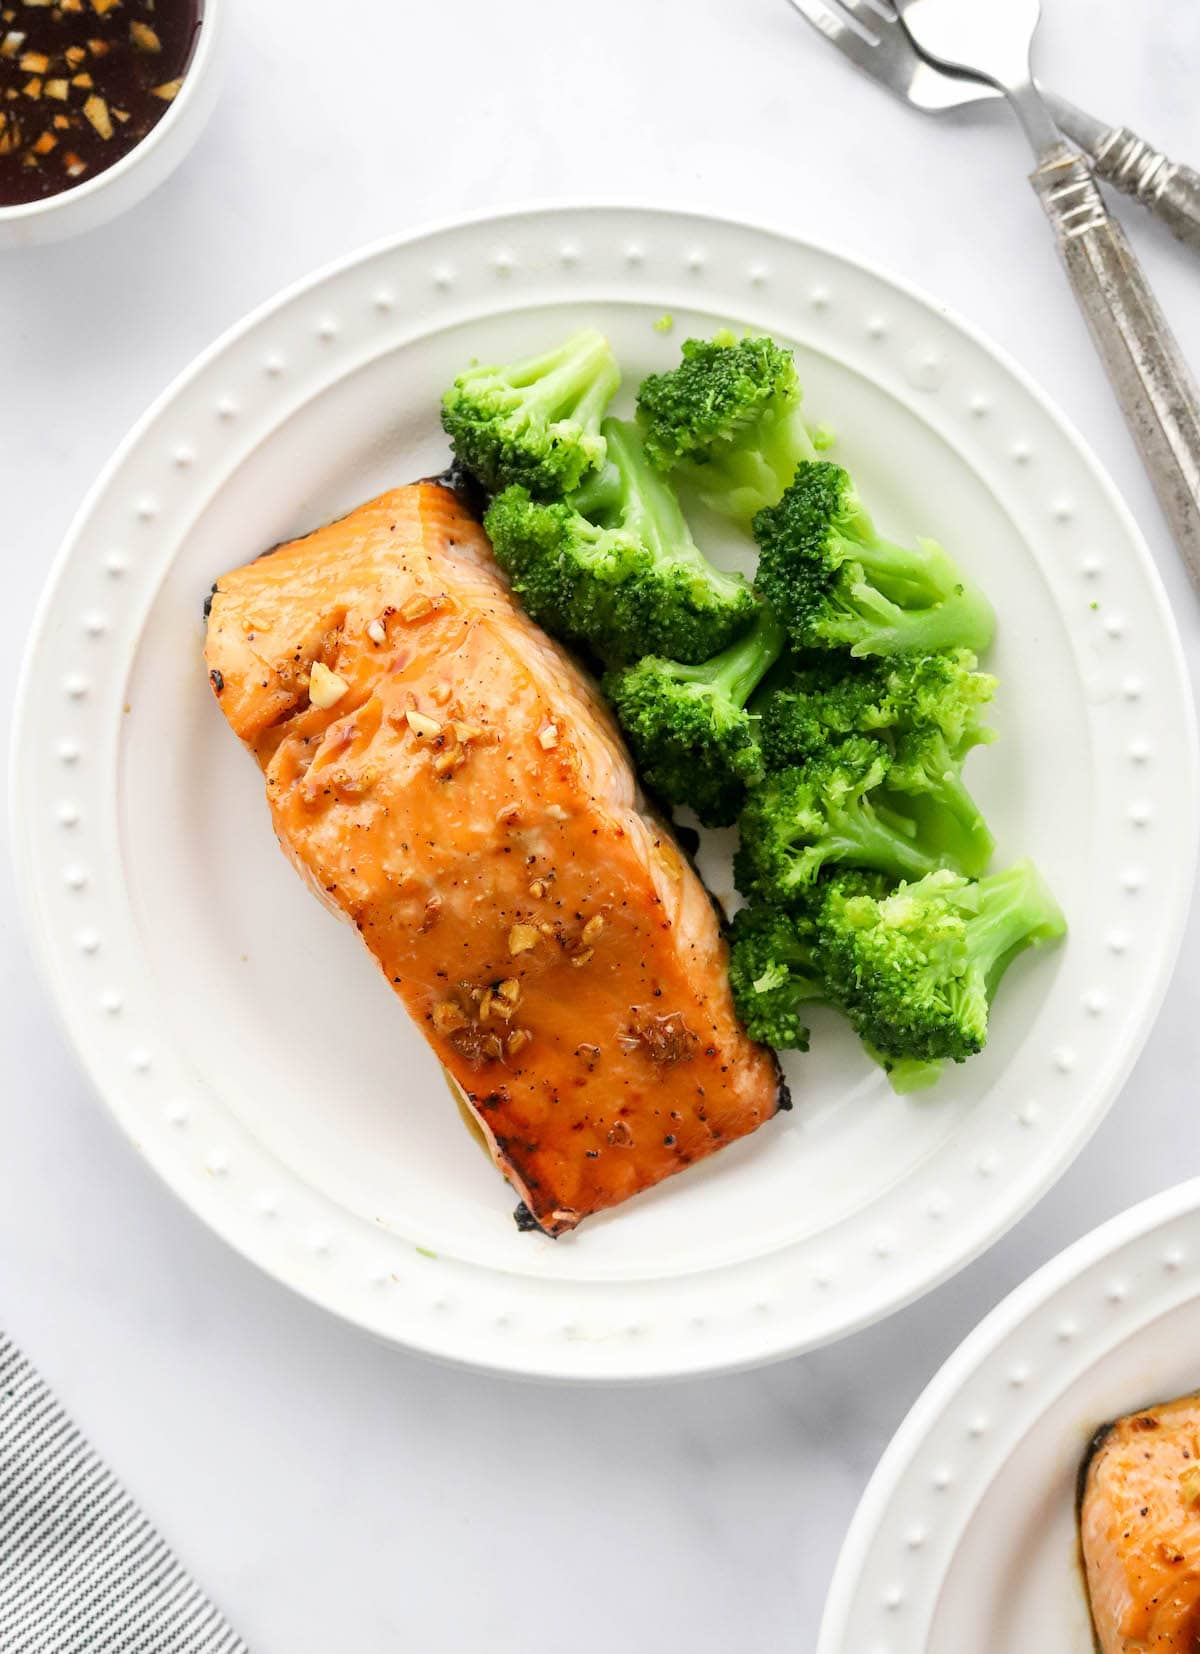 Uma foto aérea de um prato com um filete de salmão de bordo vidrado. Os brócolos cozidos a vapor também estão no prato.